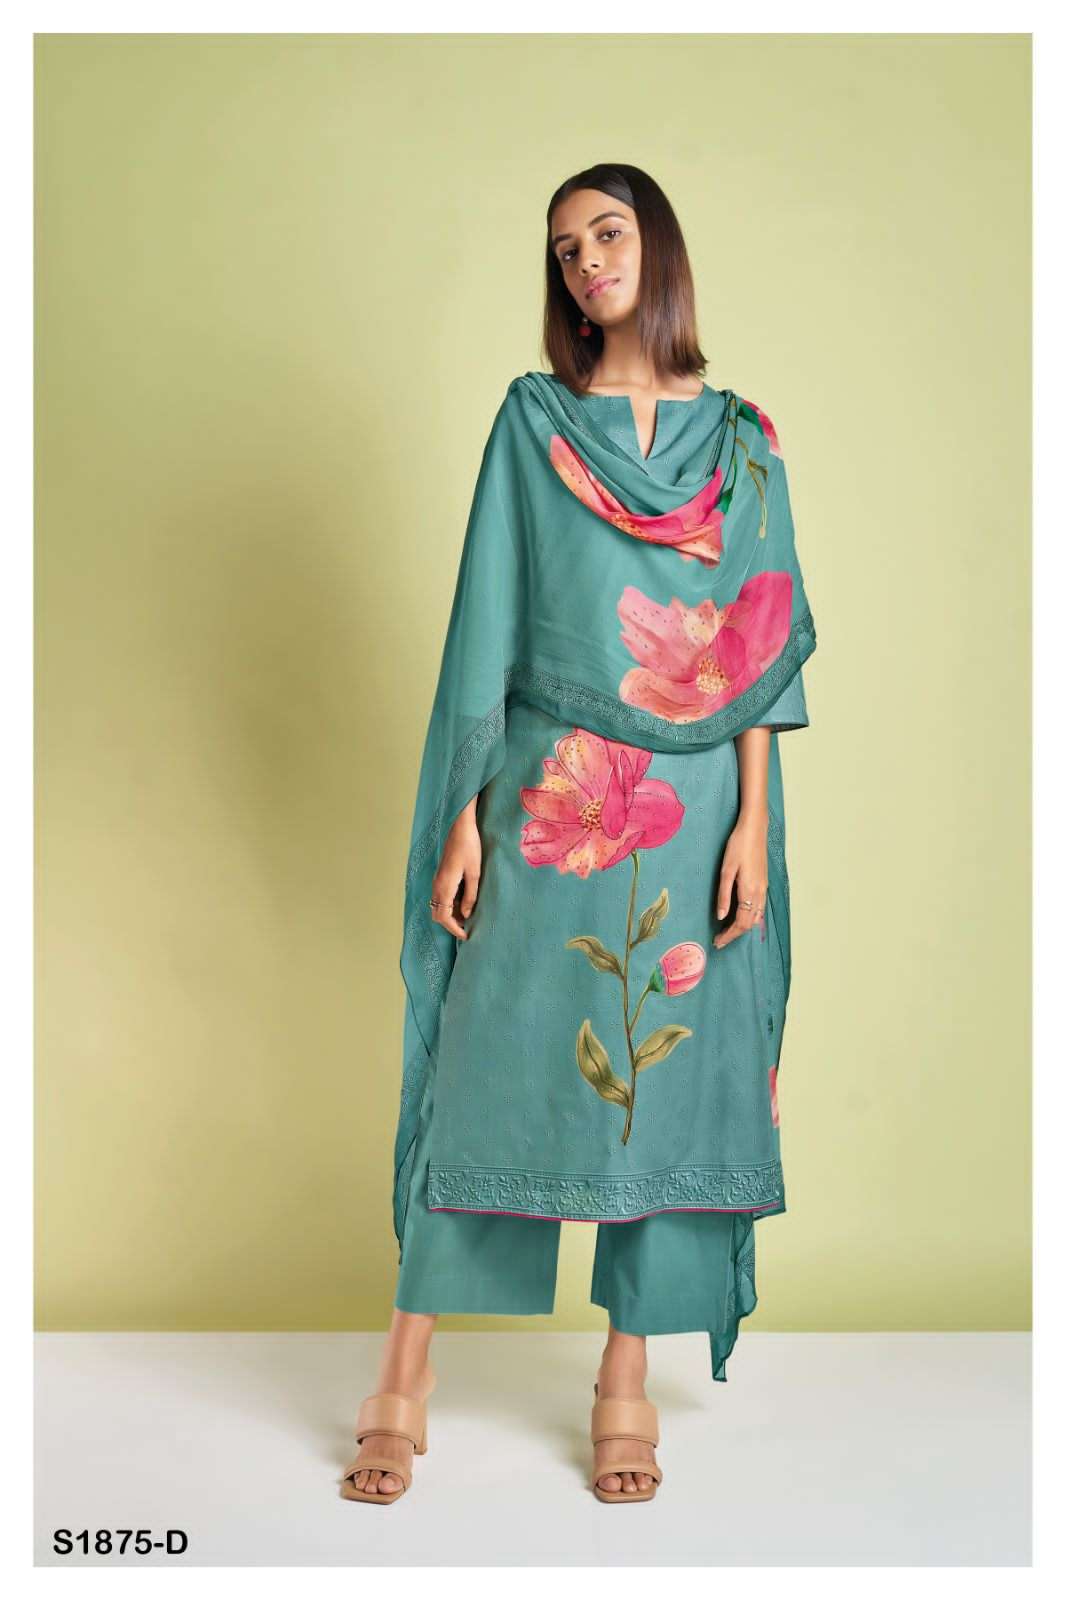 ganga 1875 colour series designer pakistani salwar kameez wholesaler surat gujarat